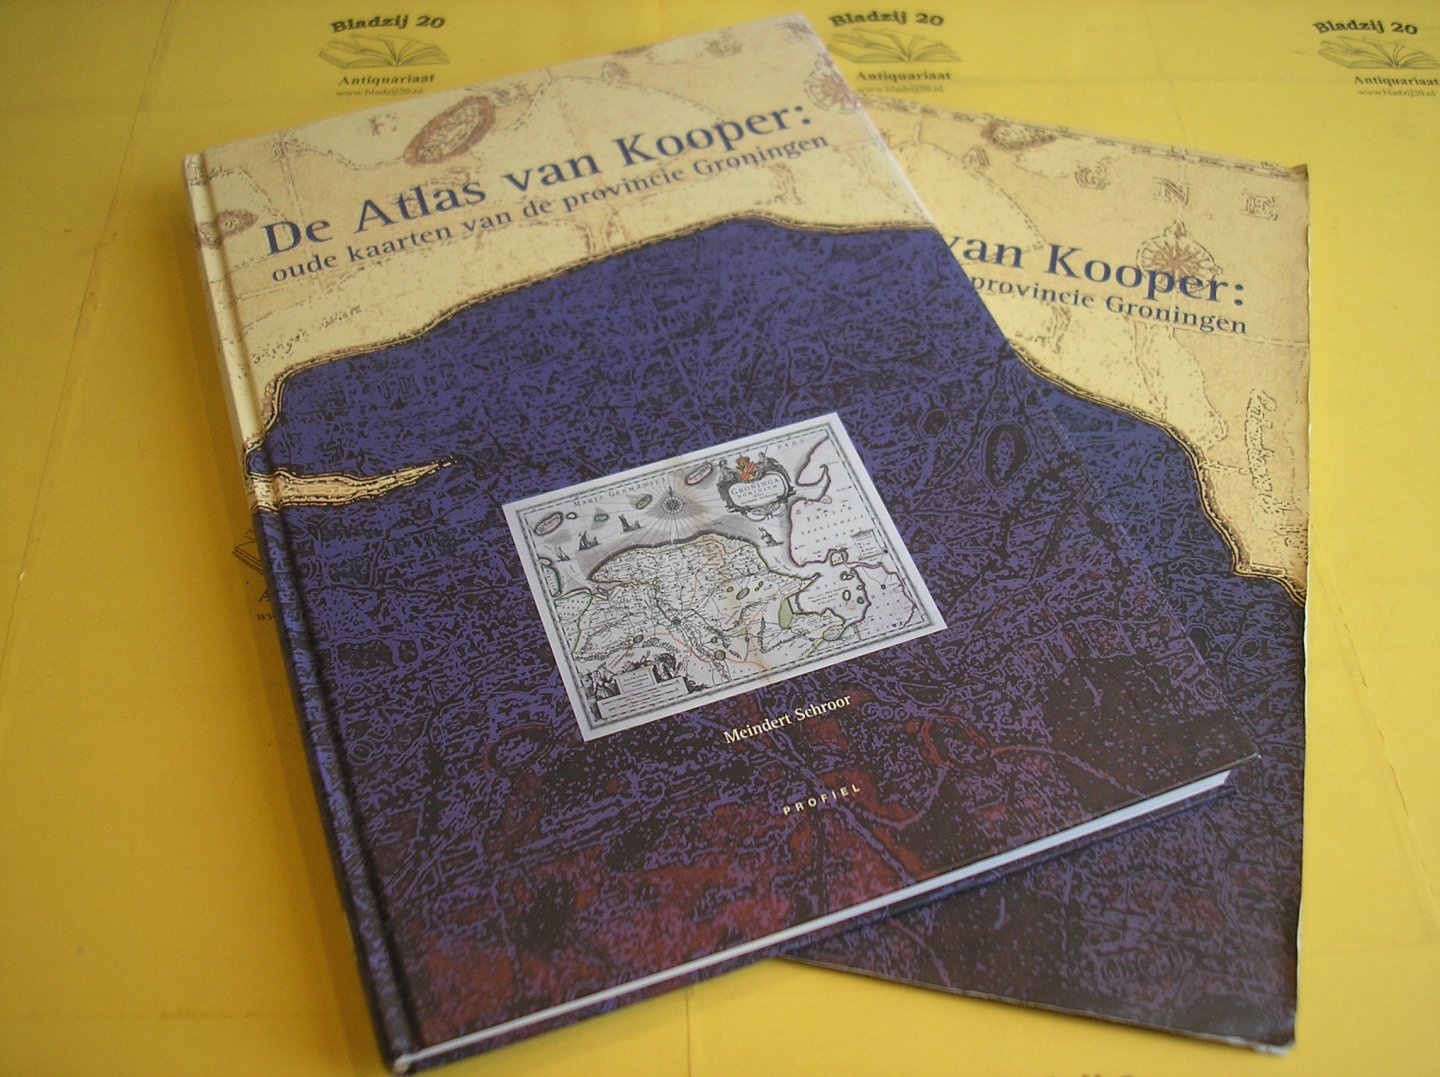 Schroor, Meindert. - De Atlas van Kooper: oude kaarten van de provincie Groningen.